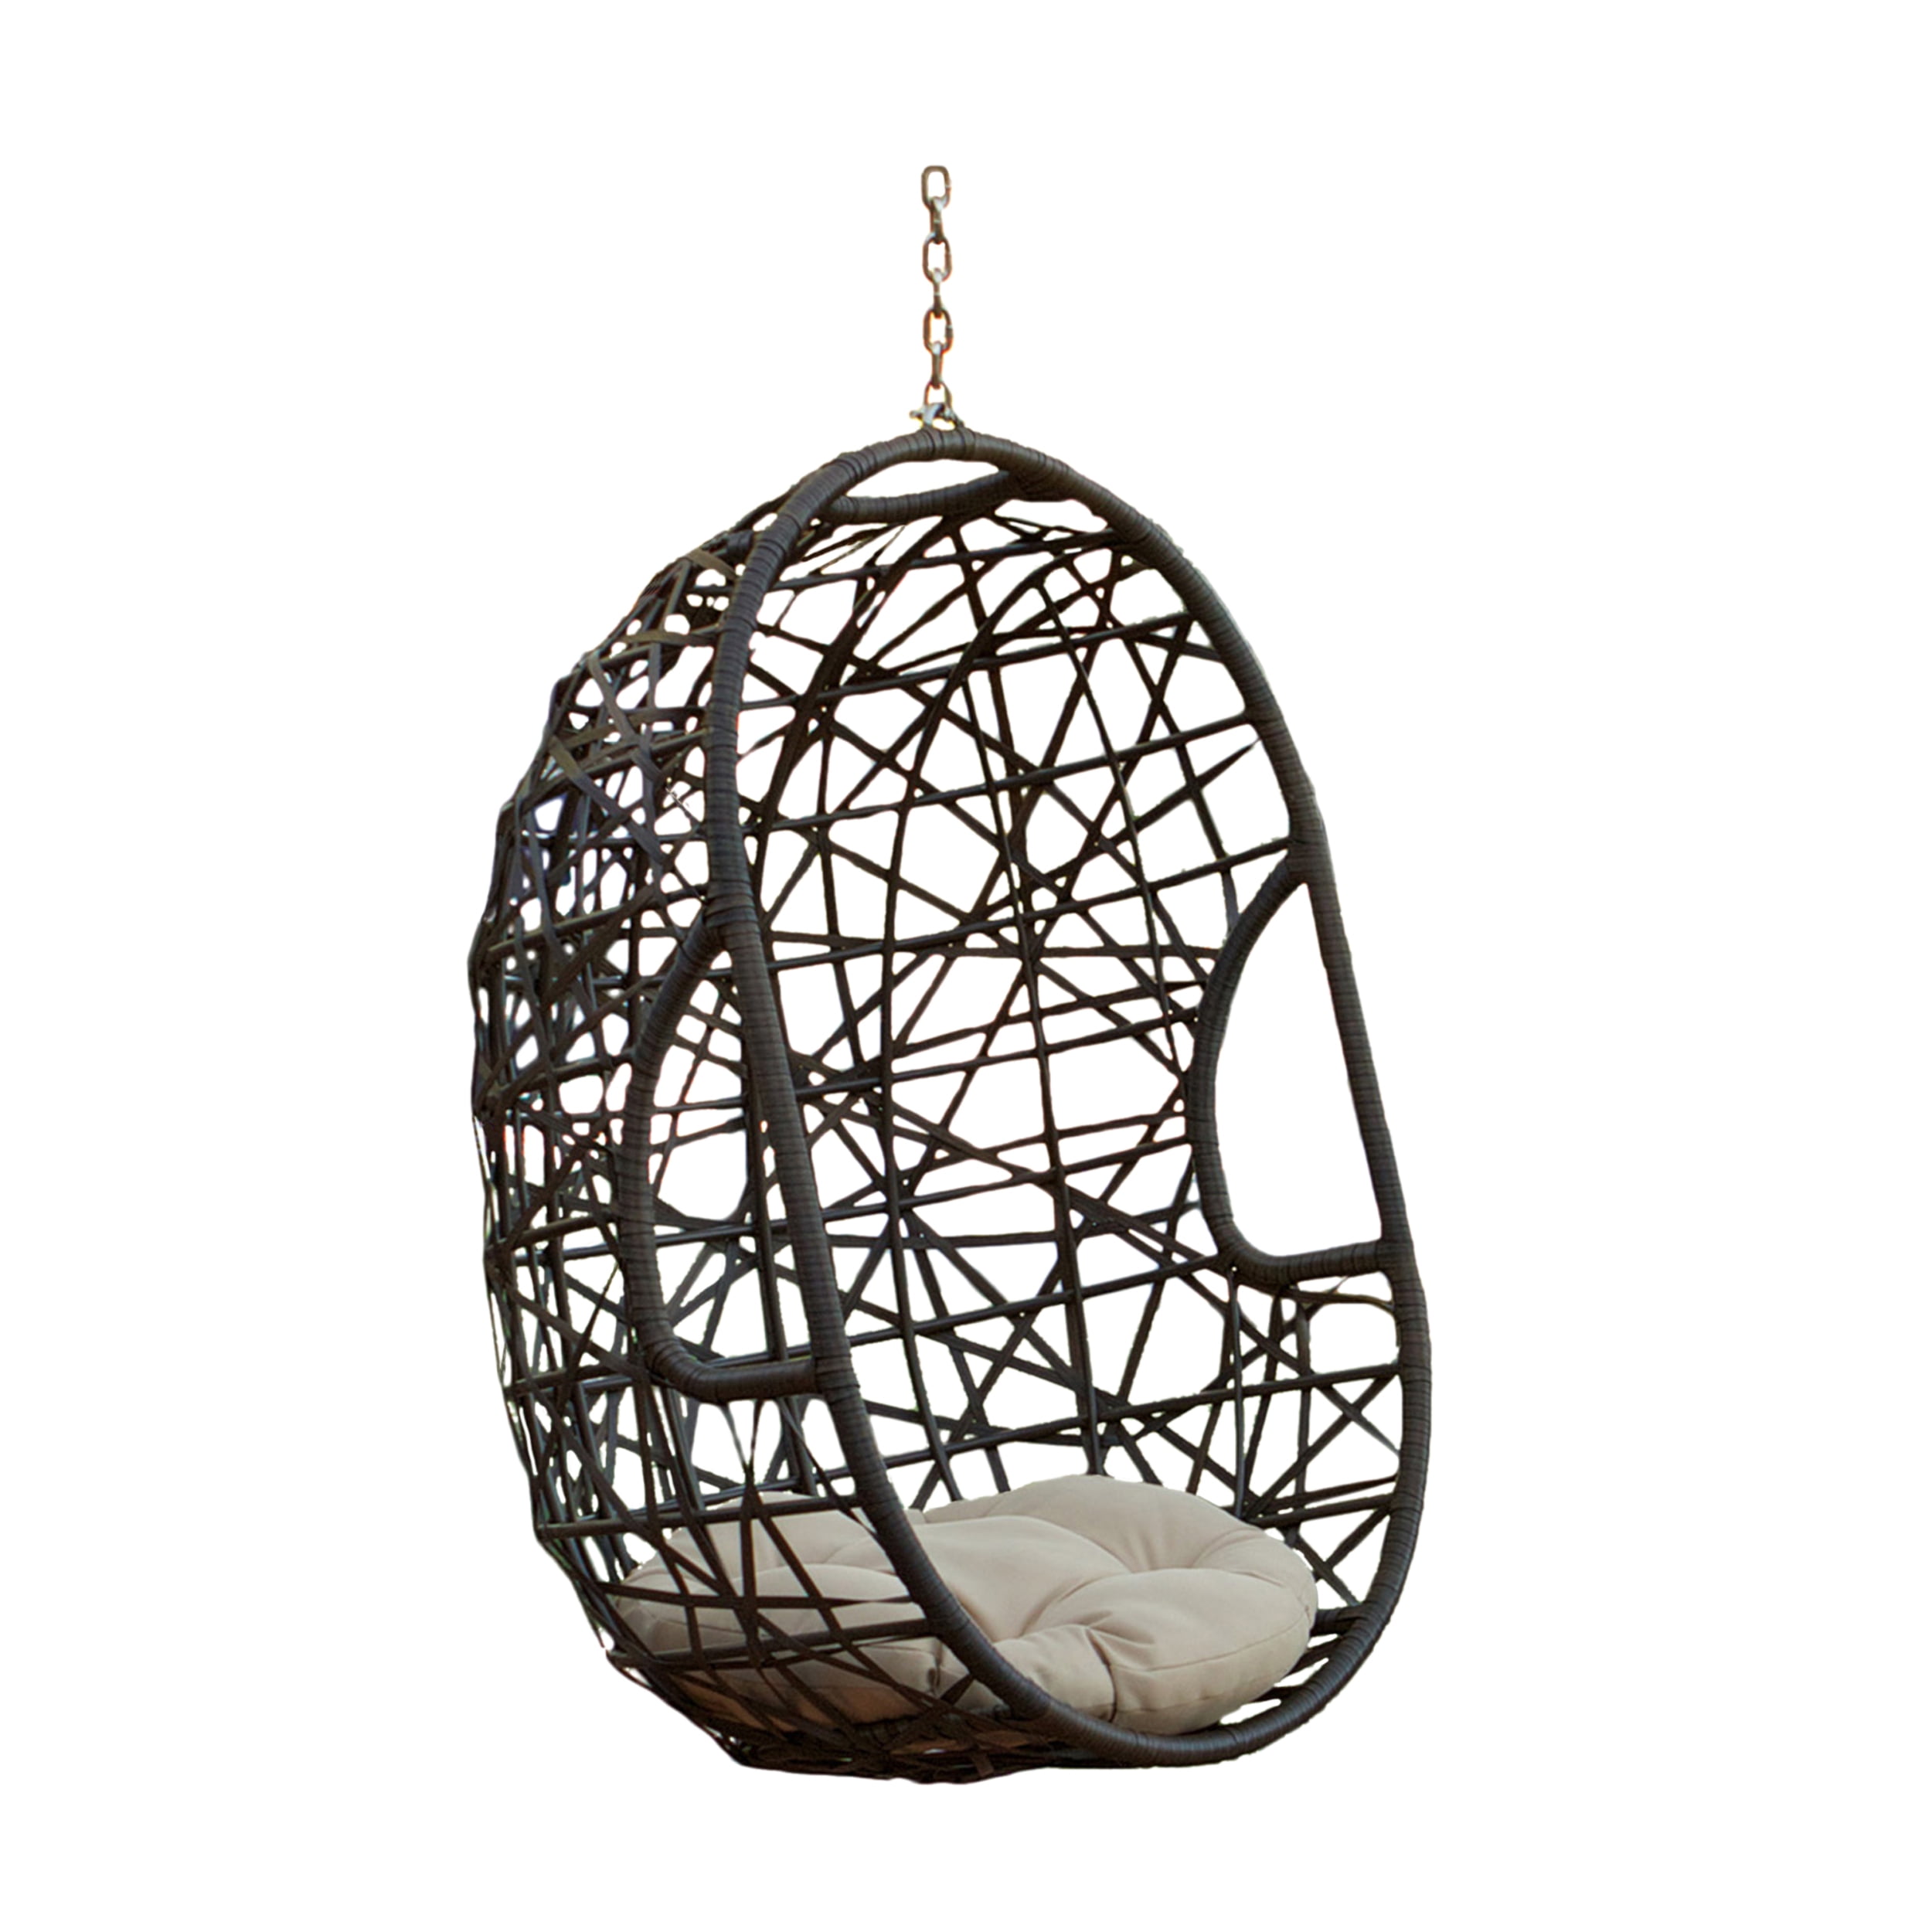 Trevyn Indoor/Outdoor Hanging Egg Wicker Chair (Stand Not